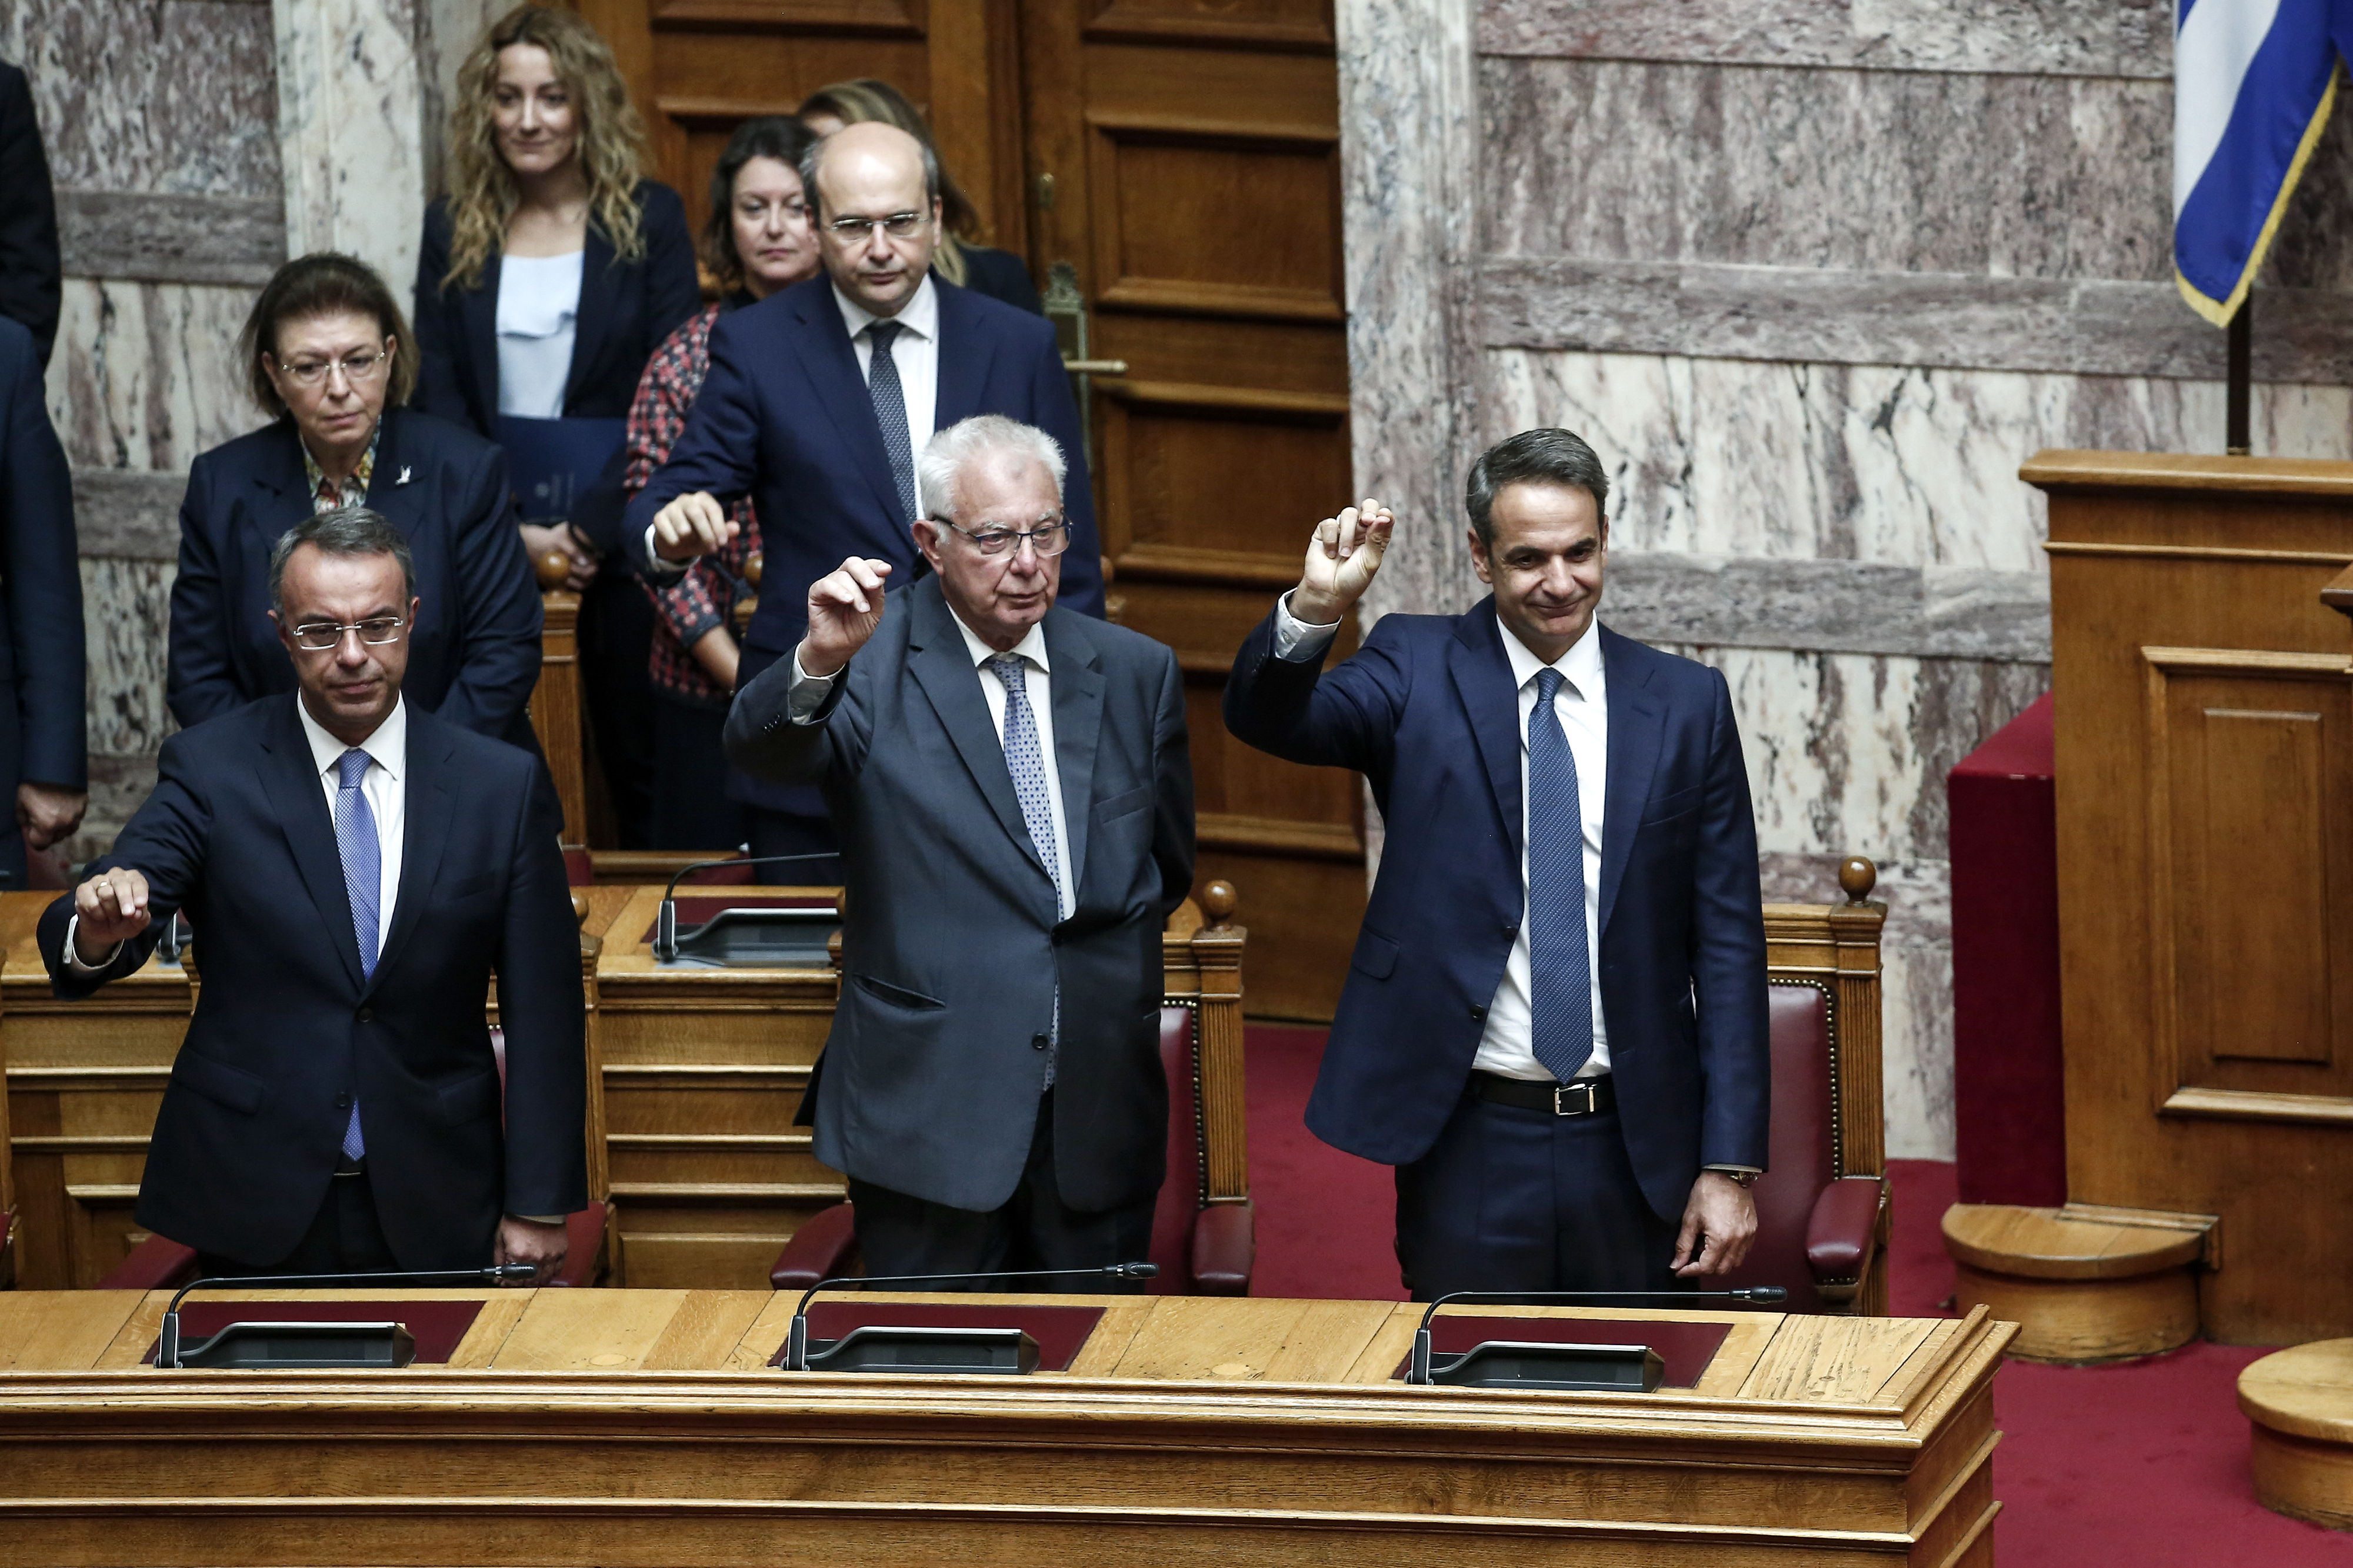 Μαραντζίδης για τα δύο χρόνια διακυβέρνησης Μητσοτάκη: Θα μεγαλώσει η διαφορά ΝΔ-ΣΥΡΙΖΑ